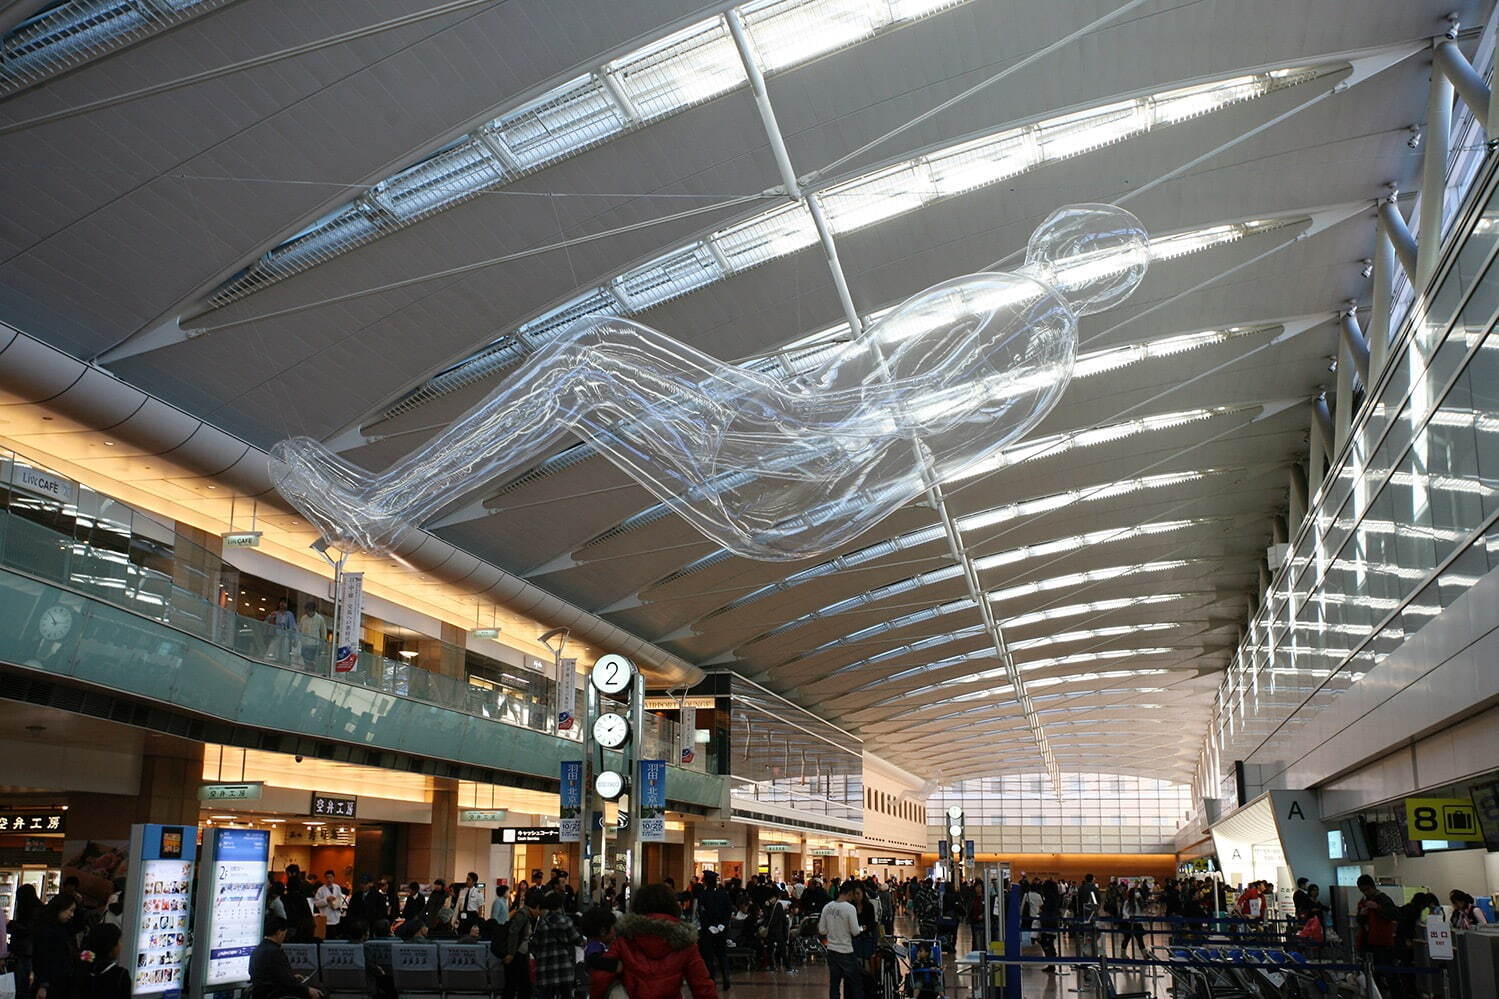 鈴木康広 《空気の人》 2007年(2009年撮影)
「空気の港—テクノロジー×空気で感じる新しい世界」羽田空港 第2ターミナルにて